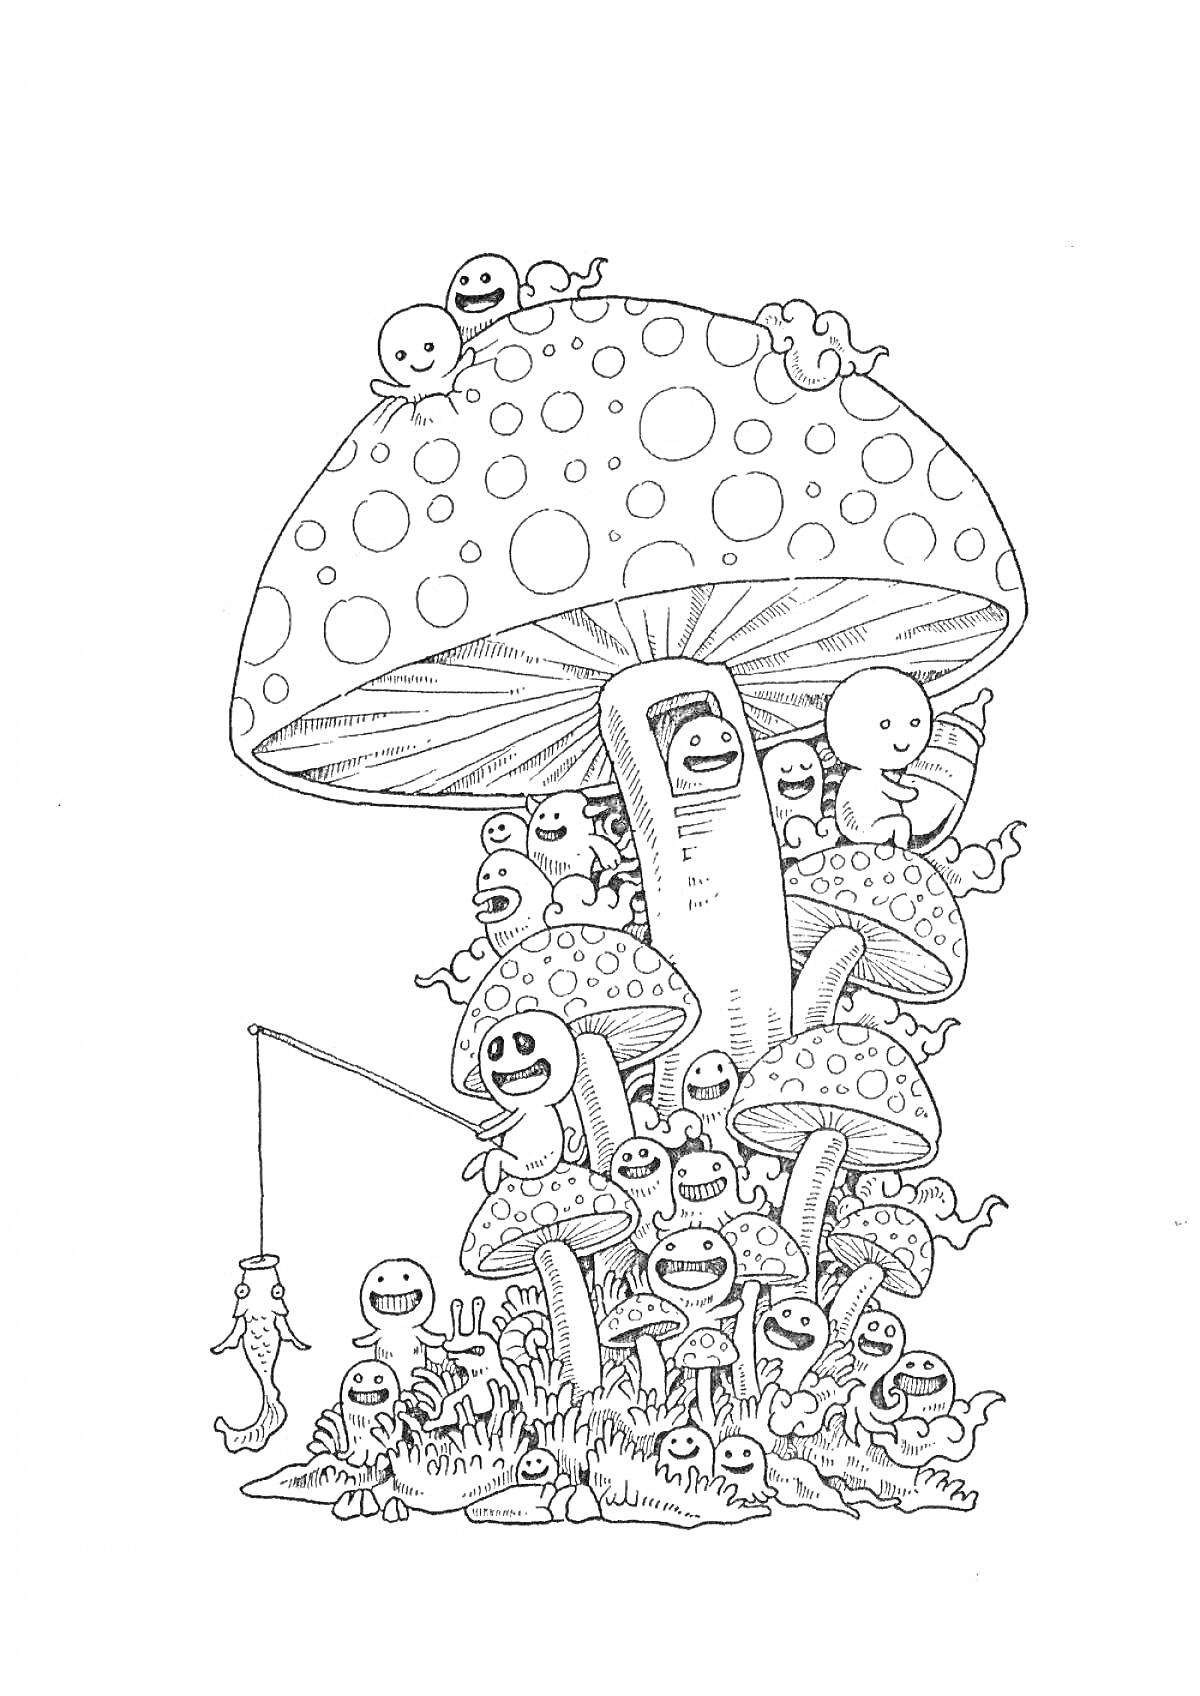 Раскраска Большой гриб, наполненный улыбающимися существами, держащимися за его ножку и шляпку, один из которых ловит червяка на удочку